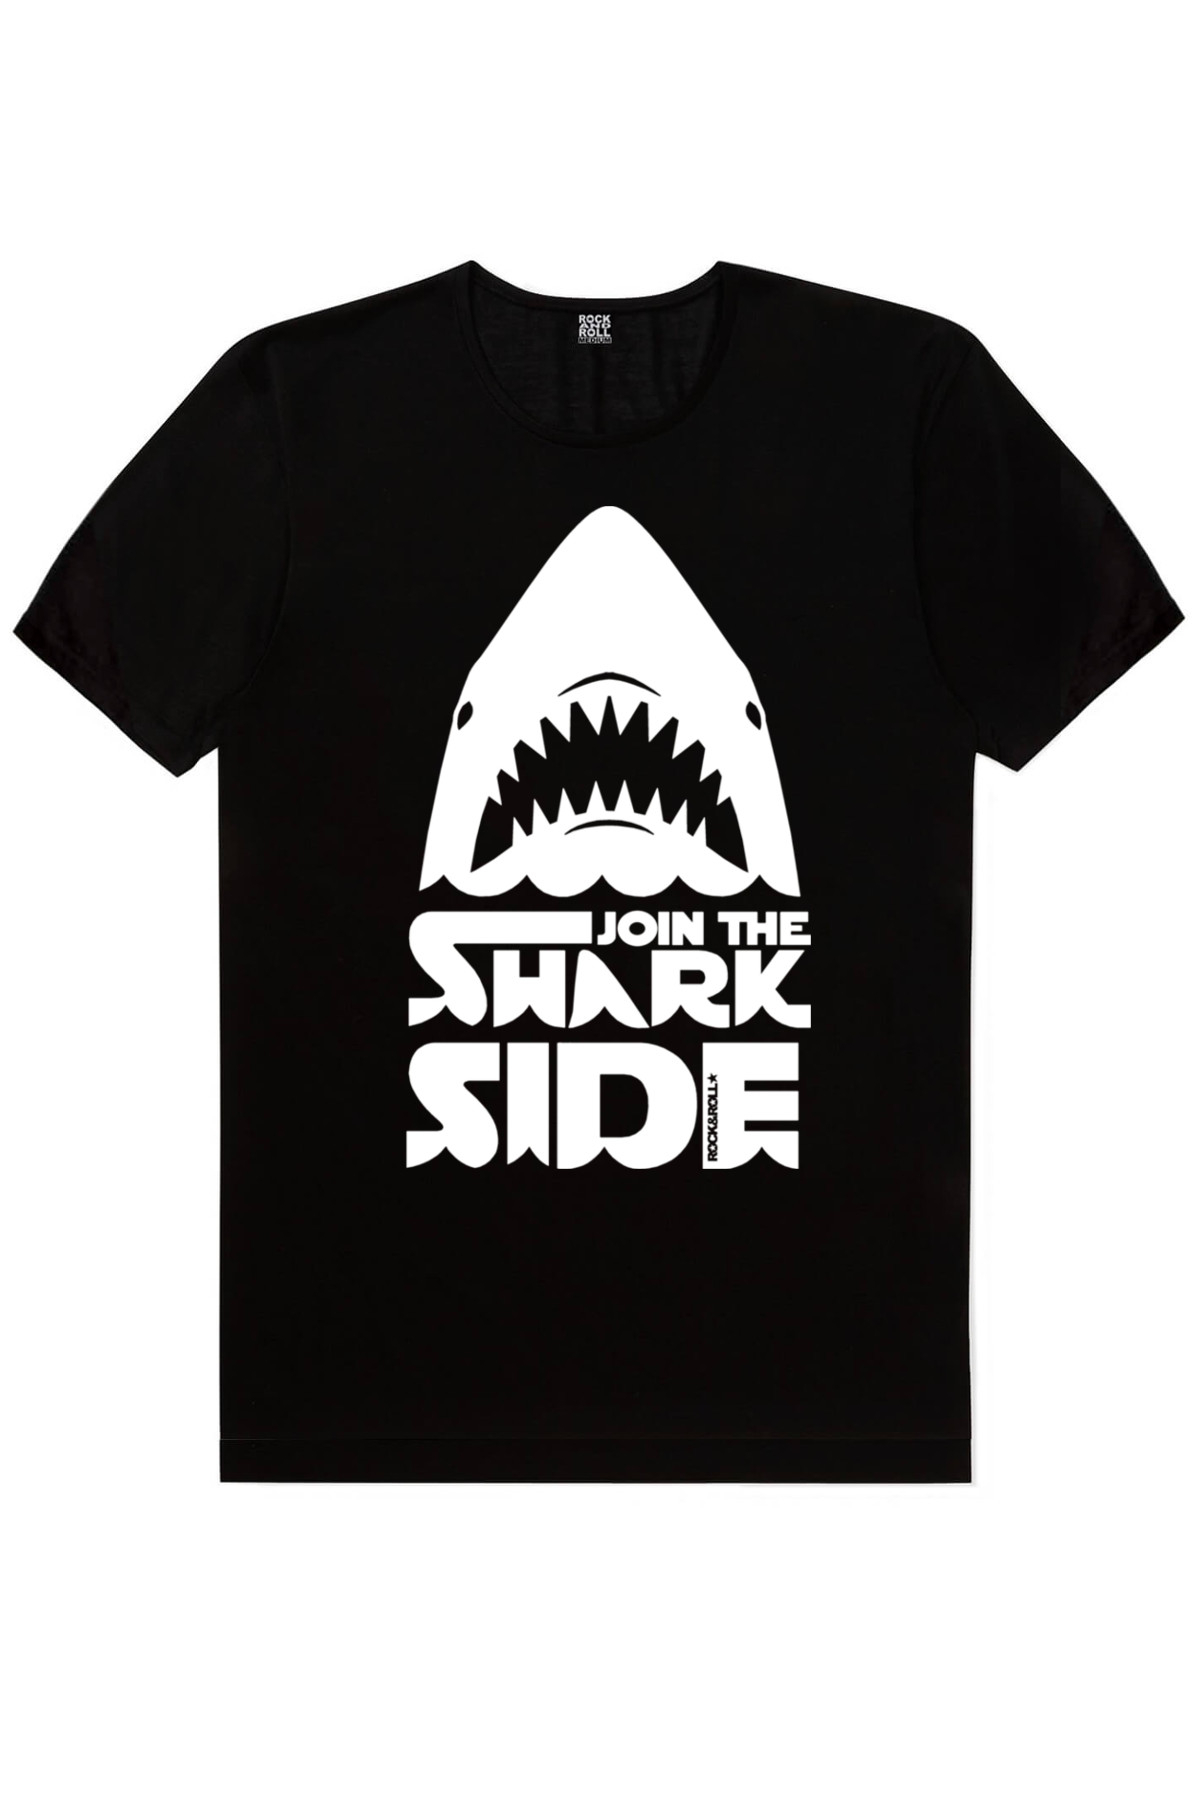 Bana Güven, Köpekbalığı Savaşları, Rocker Darth Vader Erkek 3'lü Eko Paket T-shirt